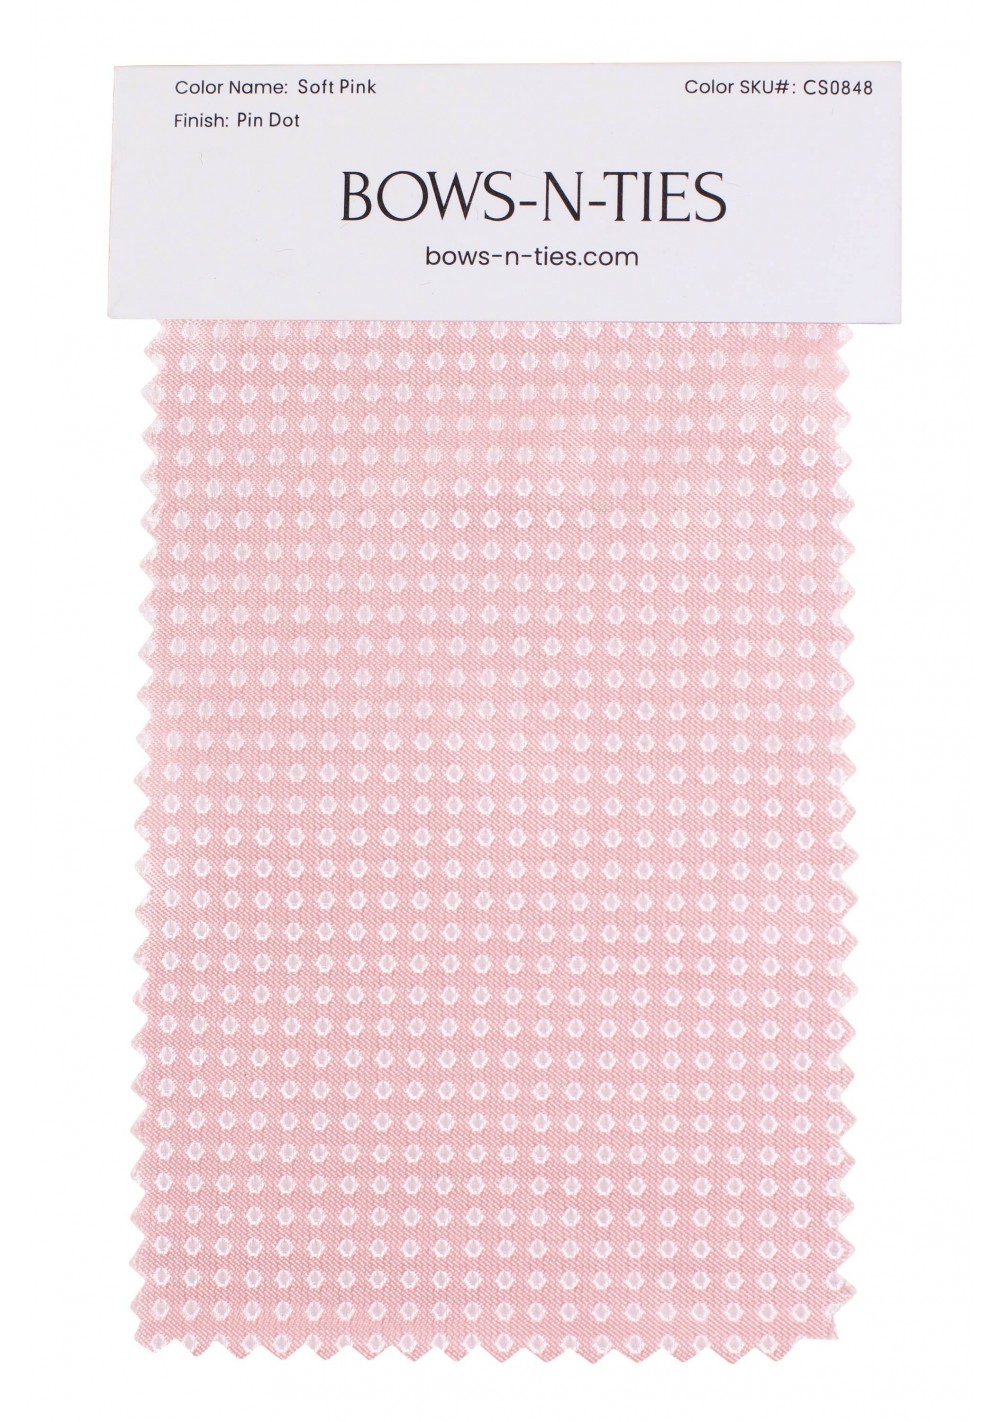 Pin Dot Fabric Swatch - Soft Pink